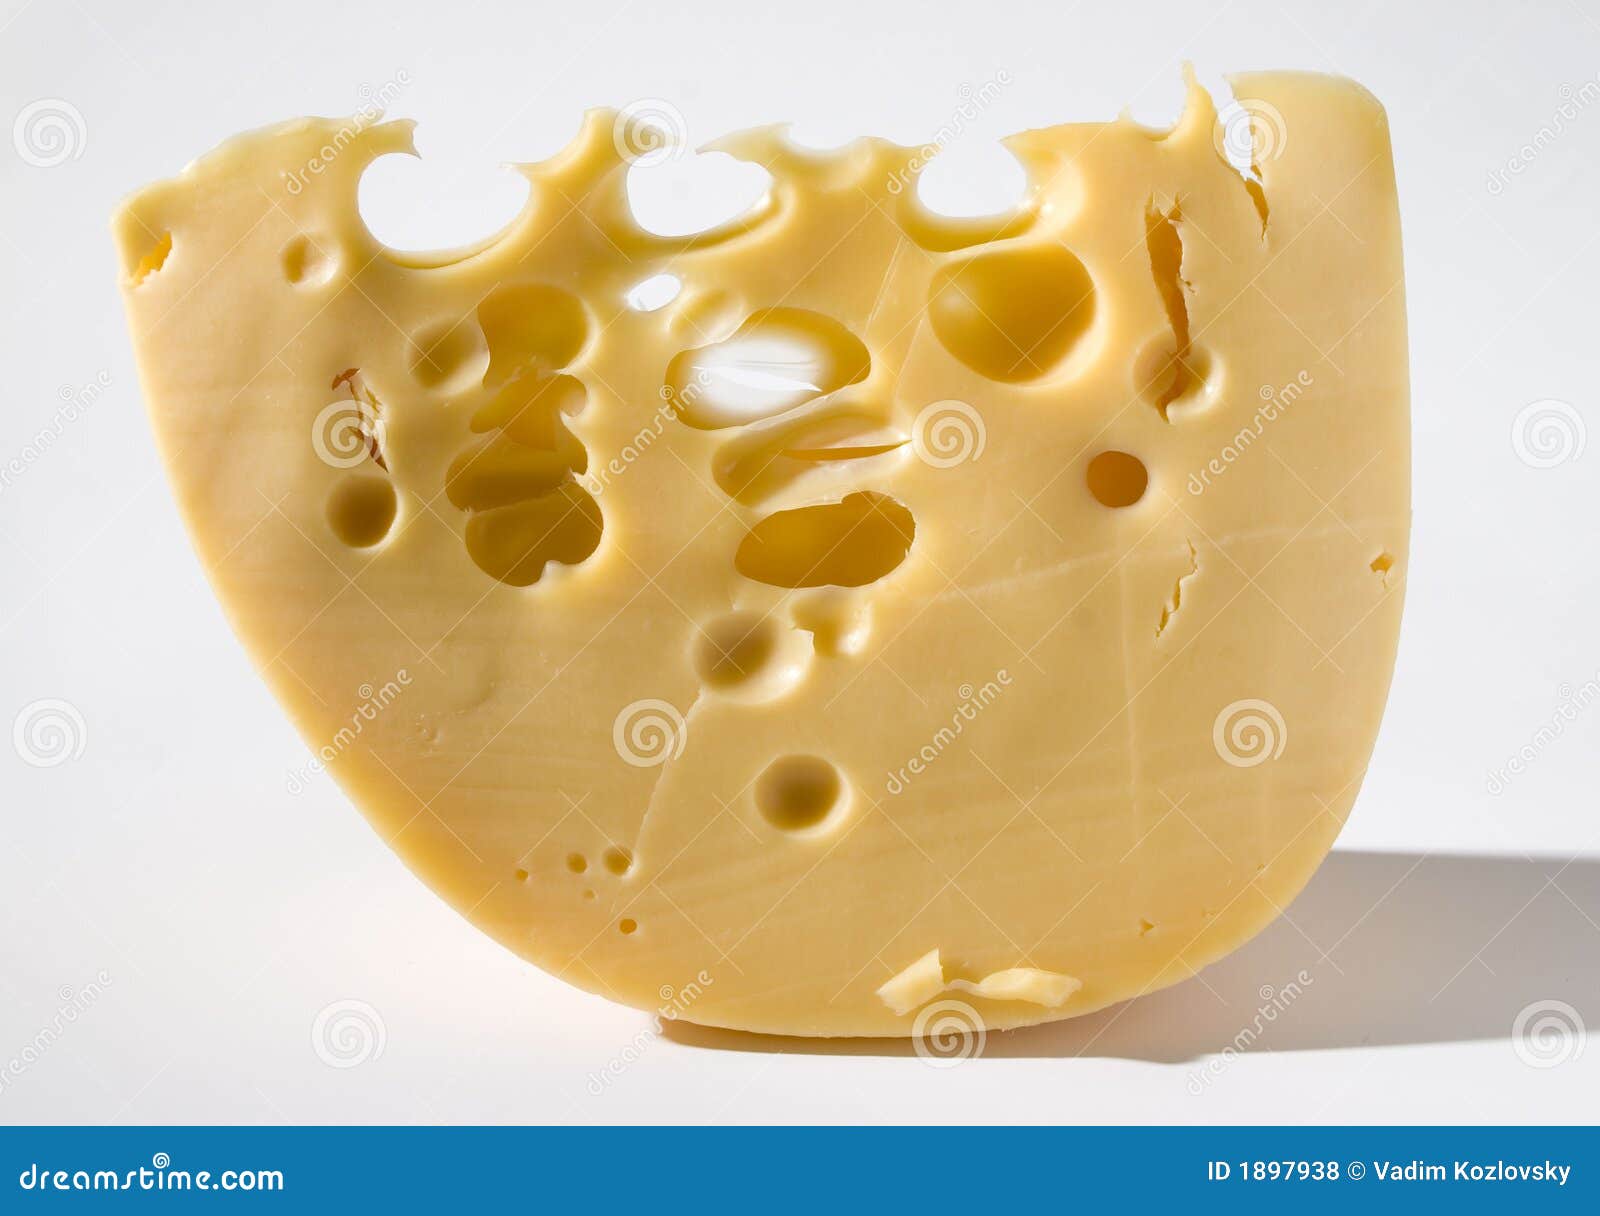 Сыр з дырочками. Сыр с дырочками название. Сыр с крупными отверстиями. Сыр с большими дырочками. Круглый сыр с дырками.